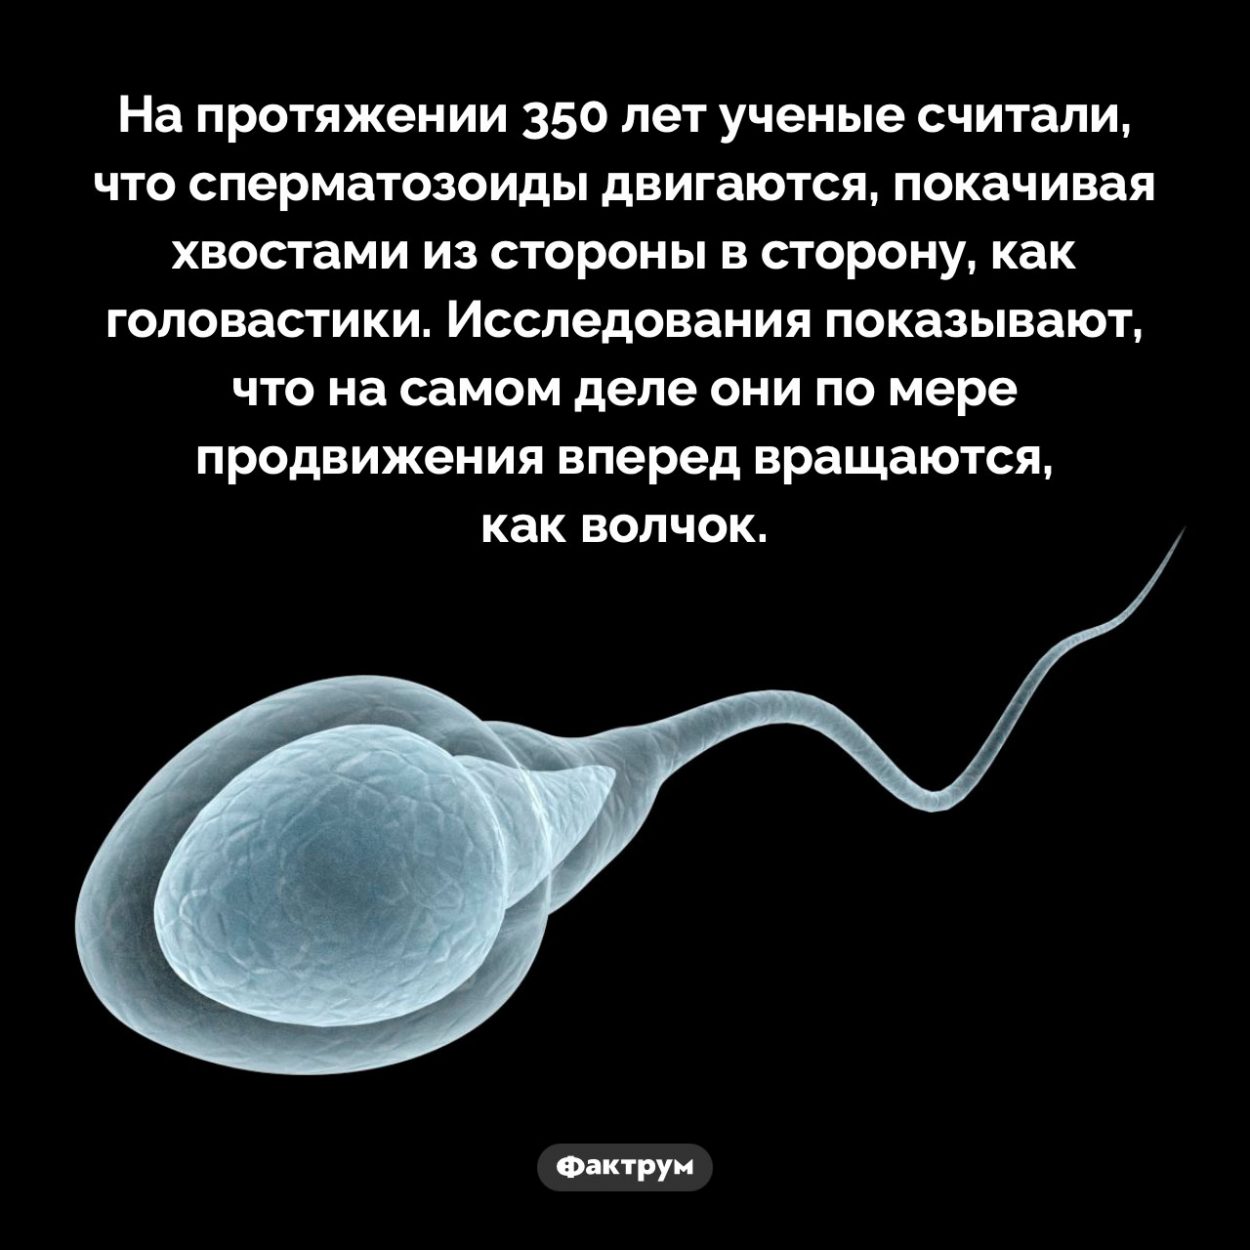 Как двигаются сперматозоиды. На протяжении 350 лет ученые считали, что сперматозоиды двигаются, покачивая хвостами из стороны в сторону, как головастики. Исследования показывают, что на самом деле они по мере продвижения вперед вращаются, как волчок.